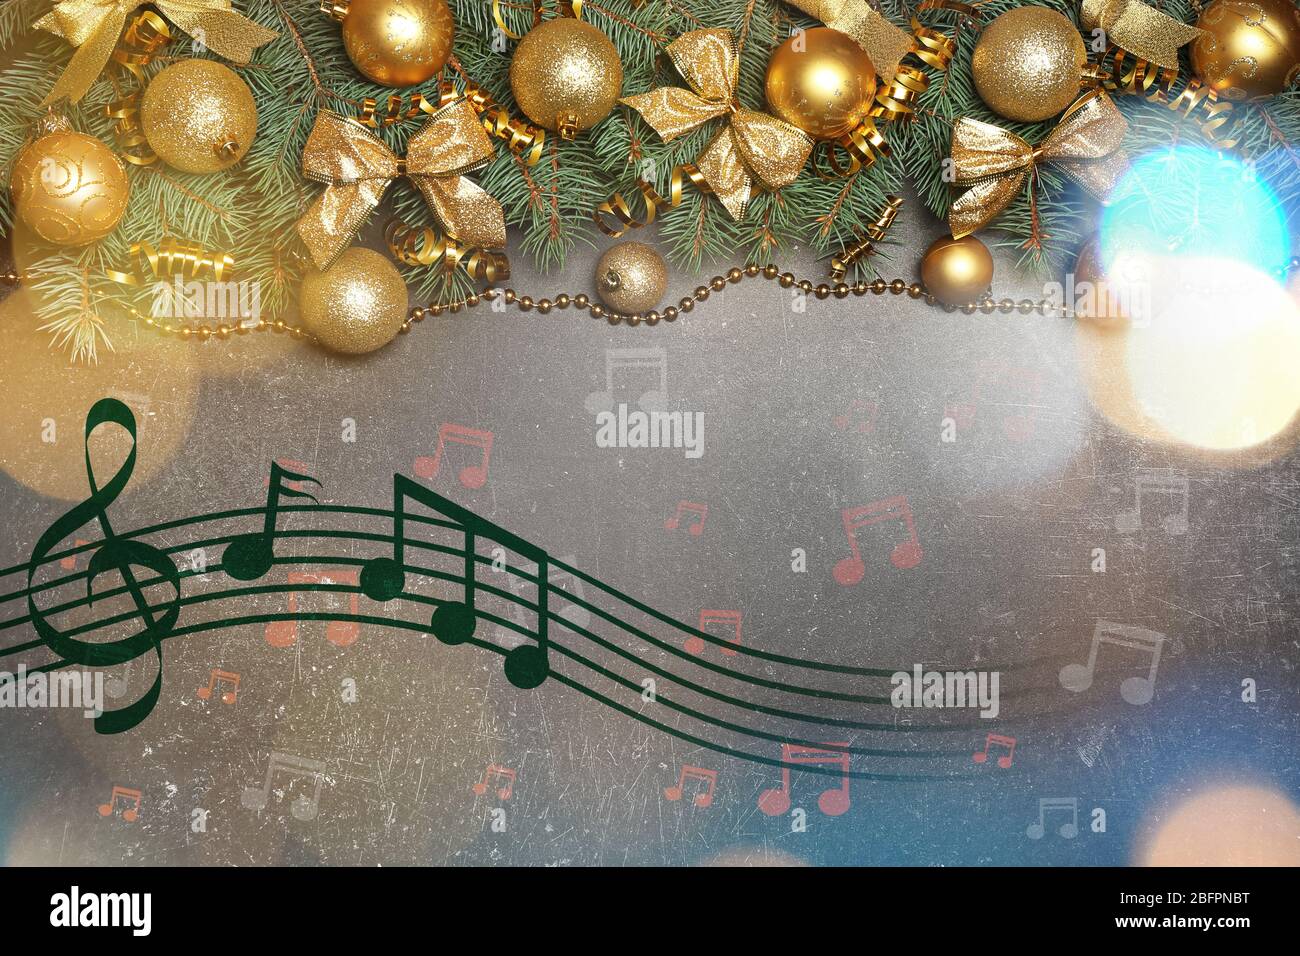 Christmas music immagini e fotografie stock ad alta risoluzione - Alamy